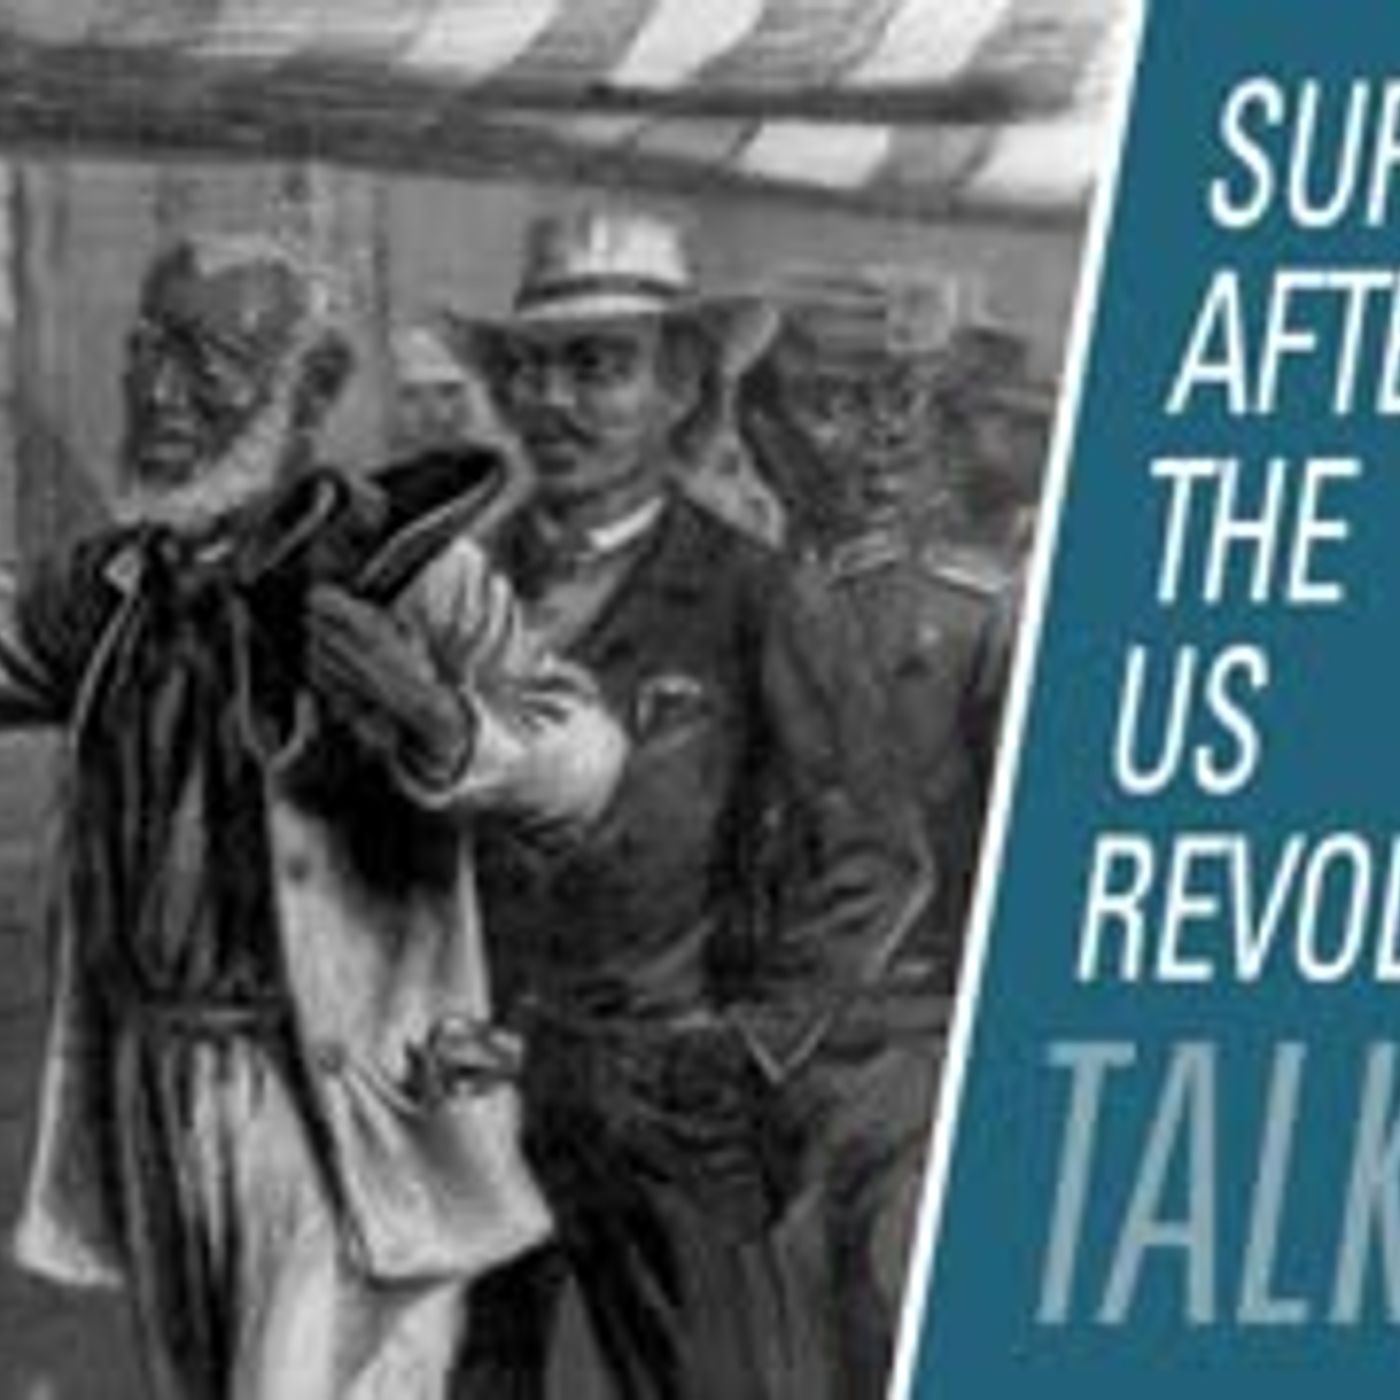 Evolution of suffrage after the US revolution | HBR Talk 310